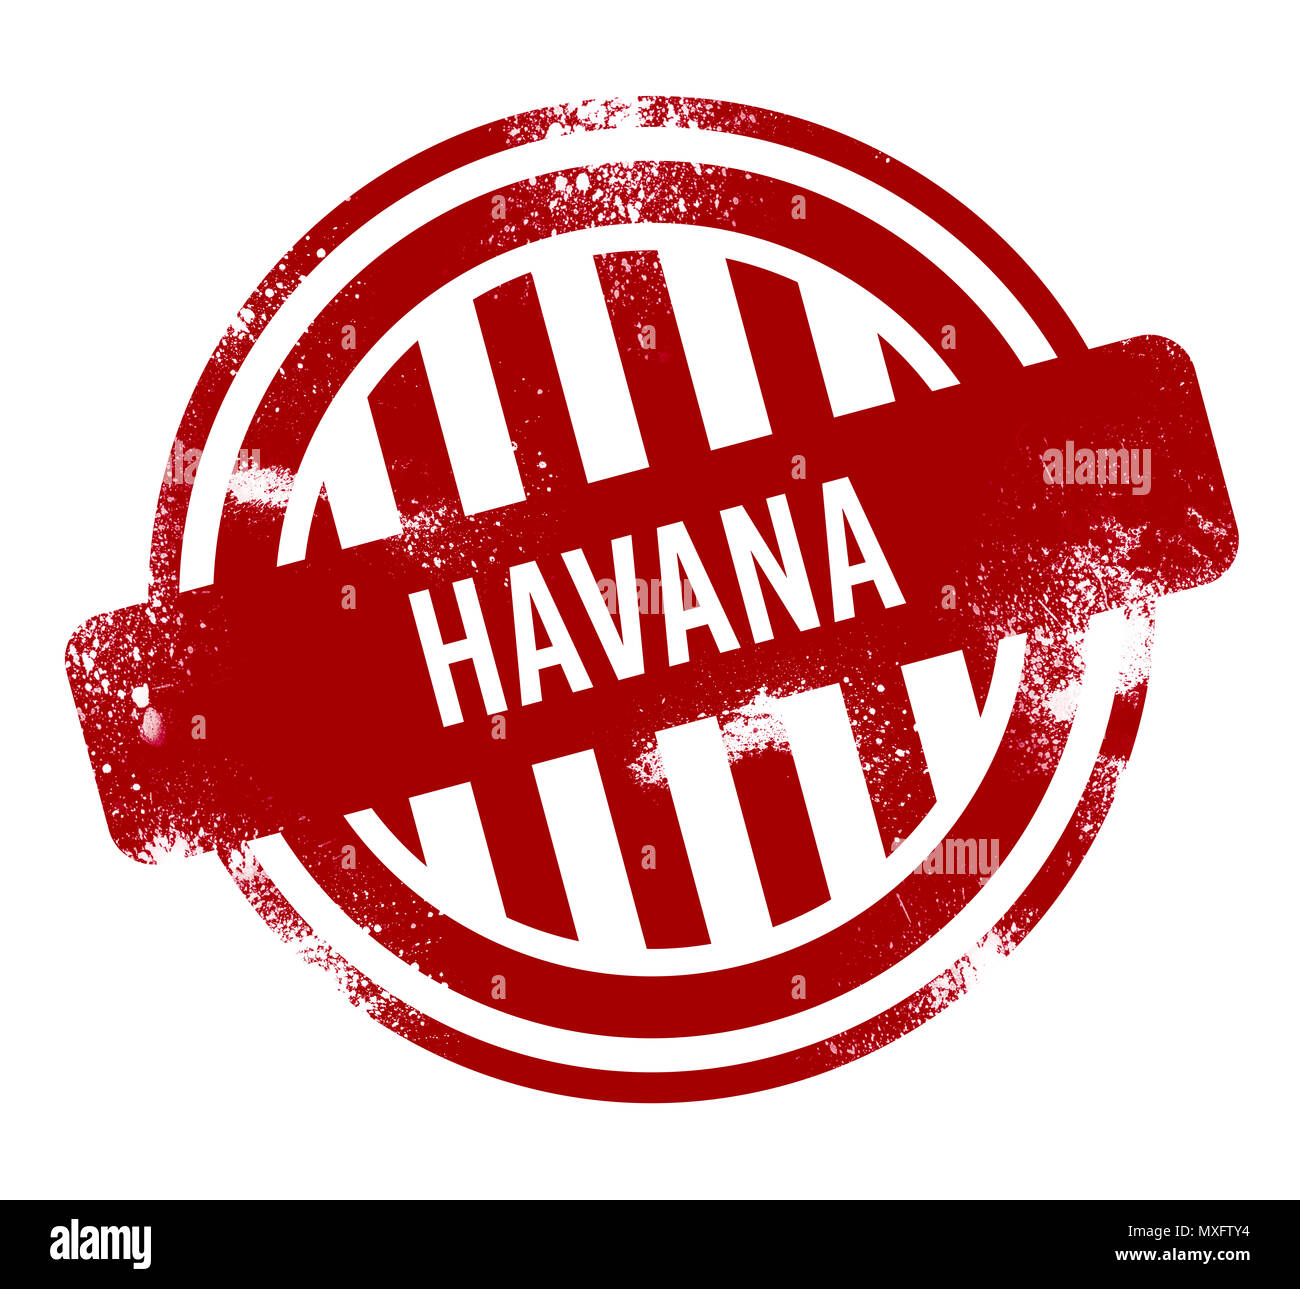 Havana - Red grunge button, stamp Stock Photo